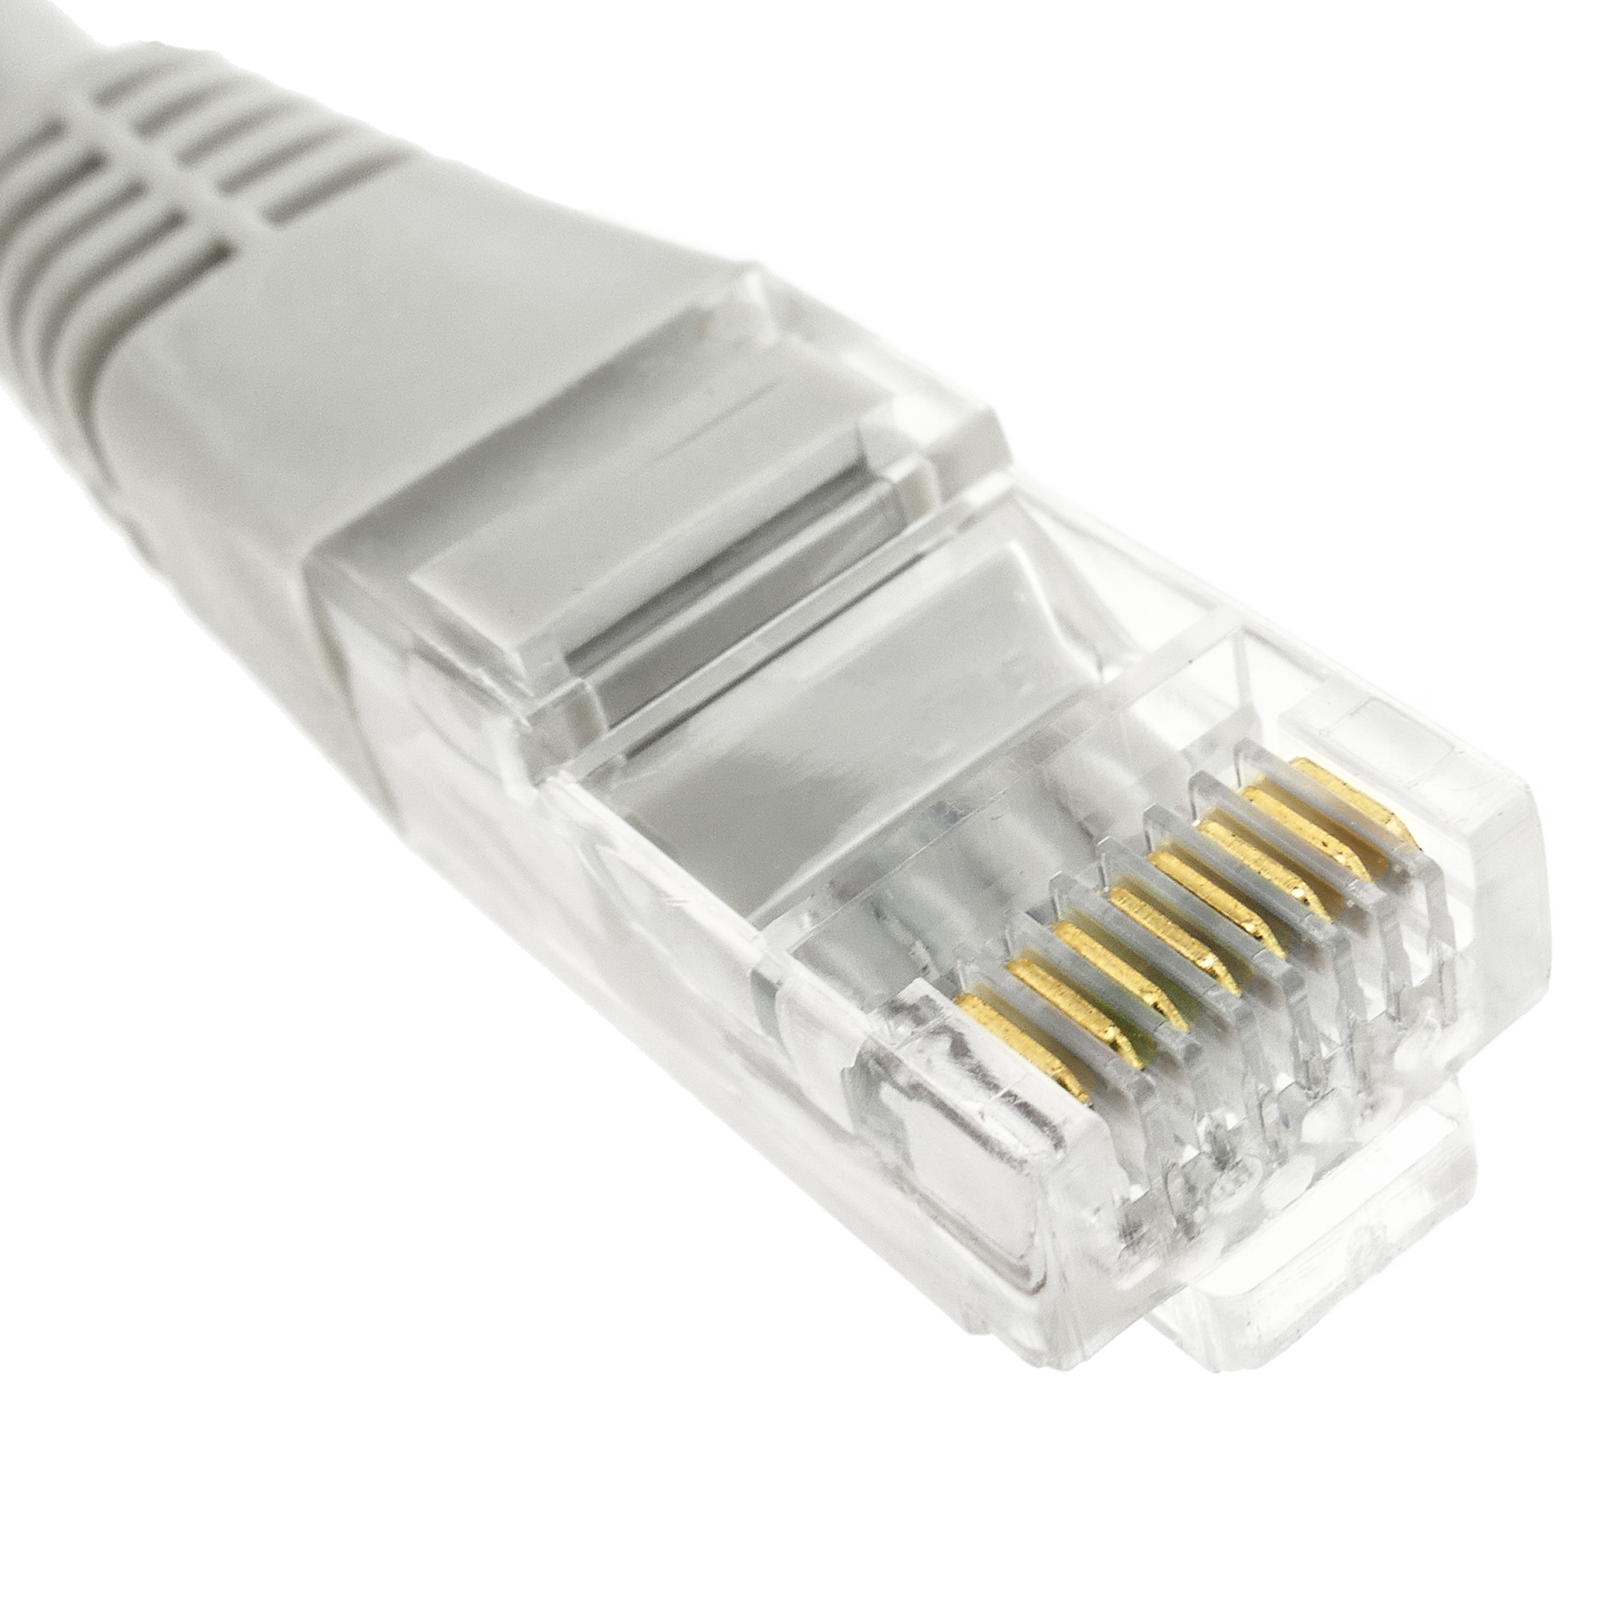 0,5m Câble réseau Cat 7 RJ45, Câble LAN Gigabit Ethernet 50cm, Gaine en PVC  et en Tissu tressé Noir, 10Gbps, Câble de Patch 6[33]